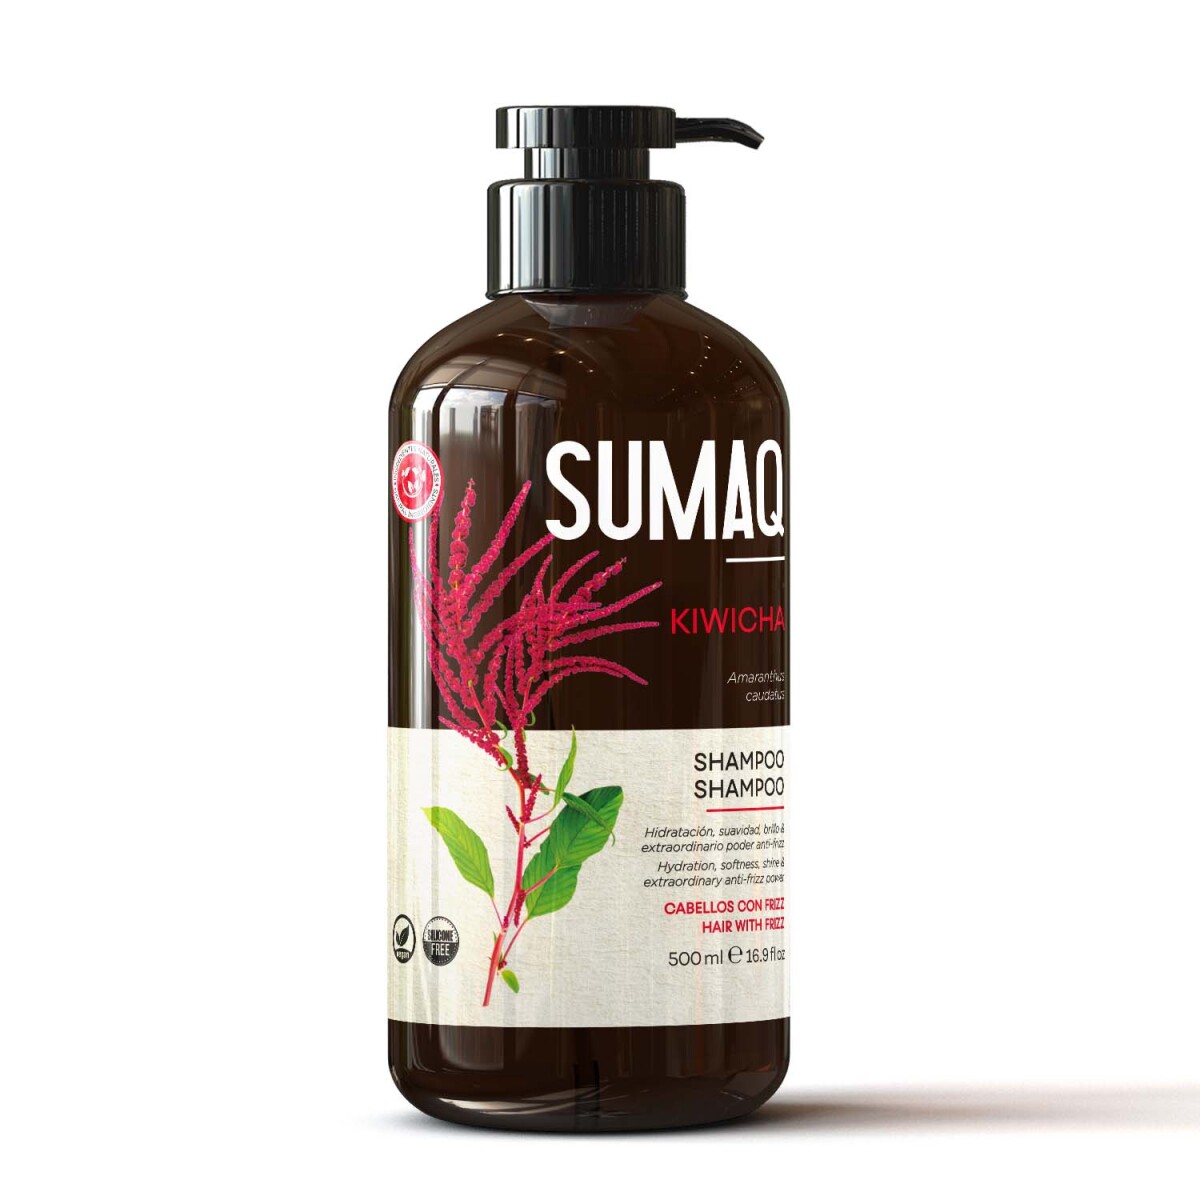 Shampoo Kiwicha Sumaq 500ml 